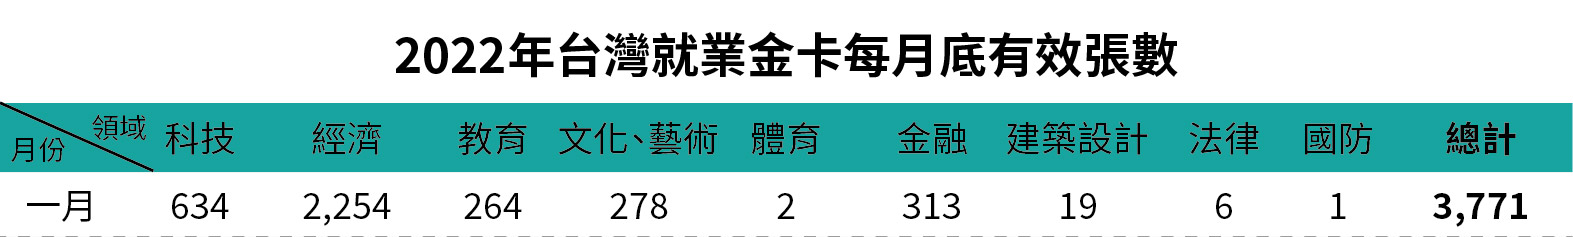 2022年台灣就業金卡每月底有效張數-一月